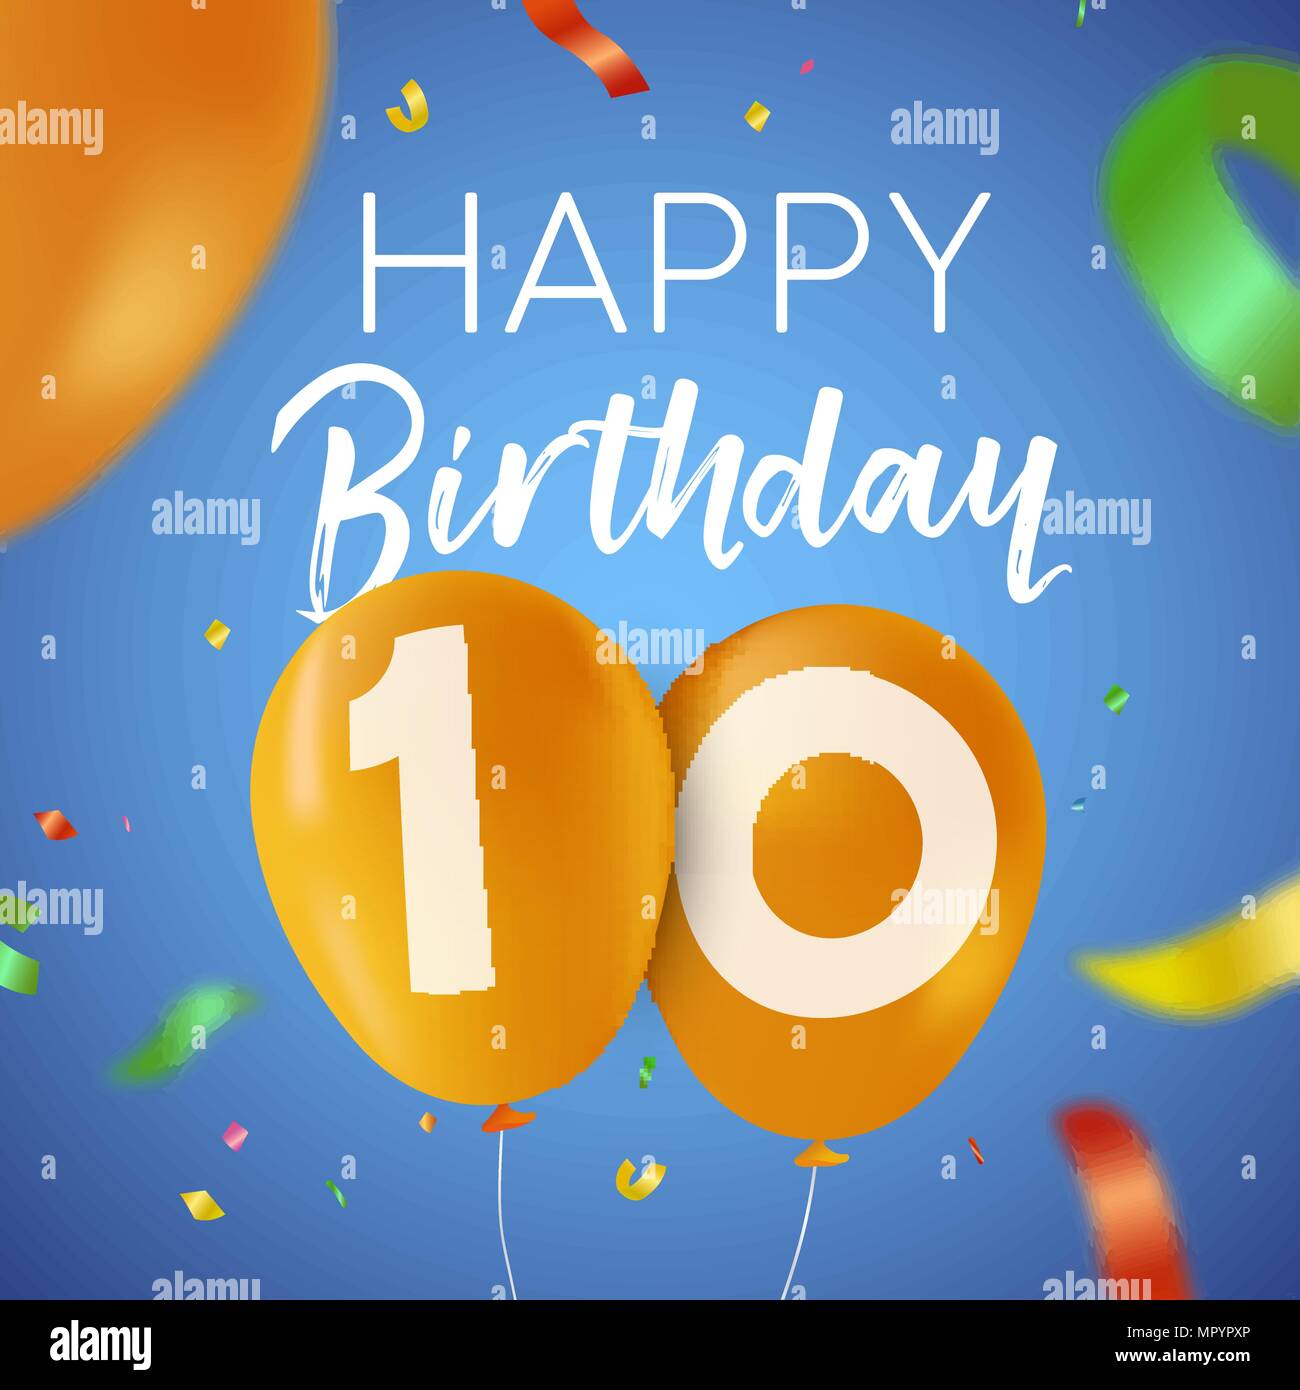 Happy Birthday 10 Jahre Spaß Design mit Ballon Anzahl und bunte Konfetti Dekoration. Ideal für Party Einladung oder Grußkarte. EPS 10 Vektor Stock Vektor